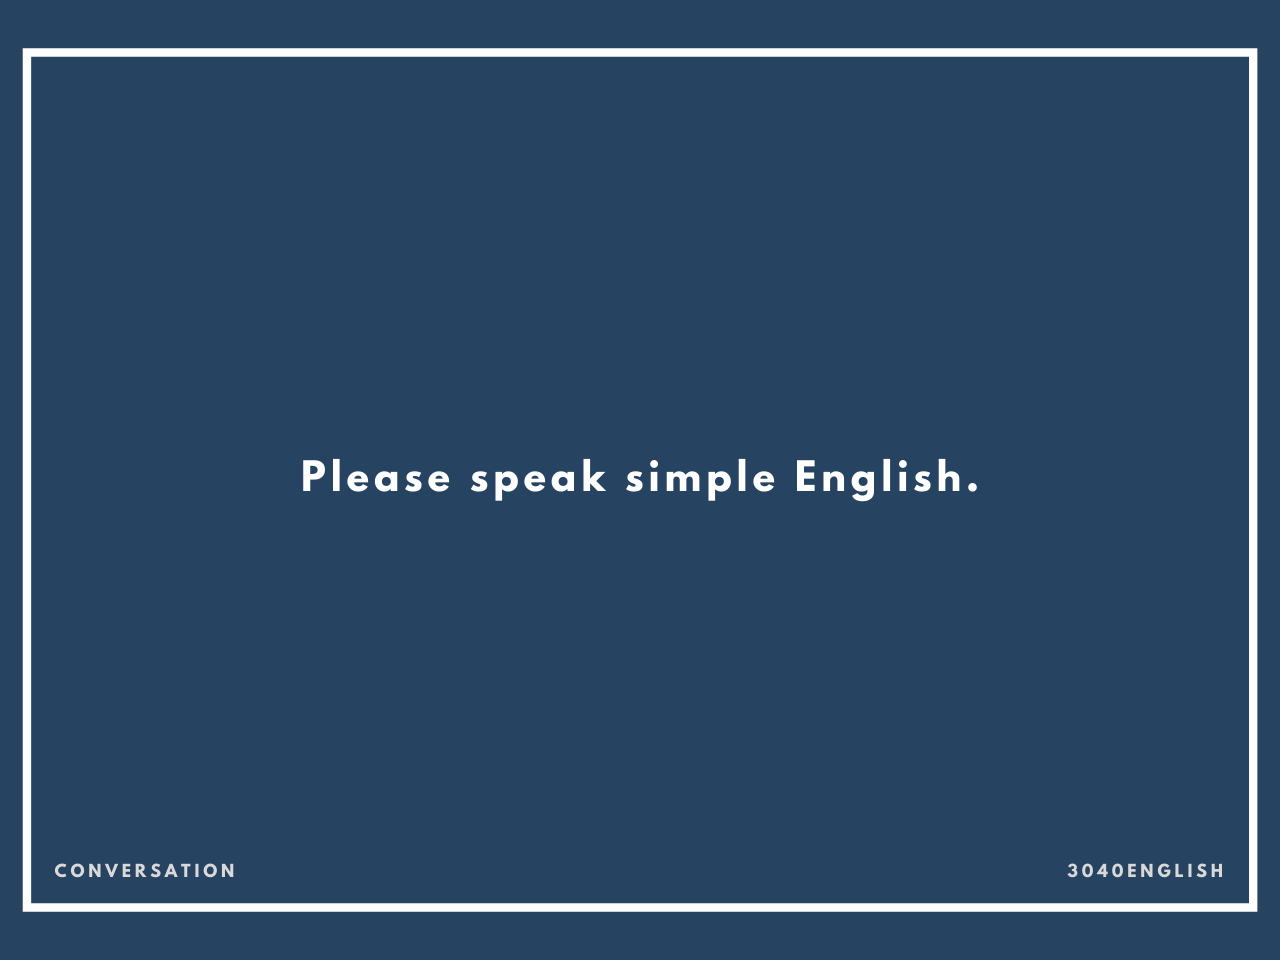 英語が苦手なことを伝える英会話フレーズ 音読用例文あり 30代40代で身につける英会話